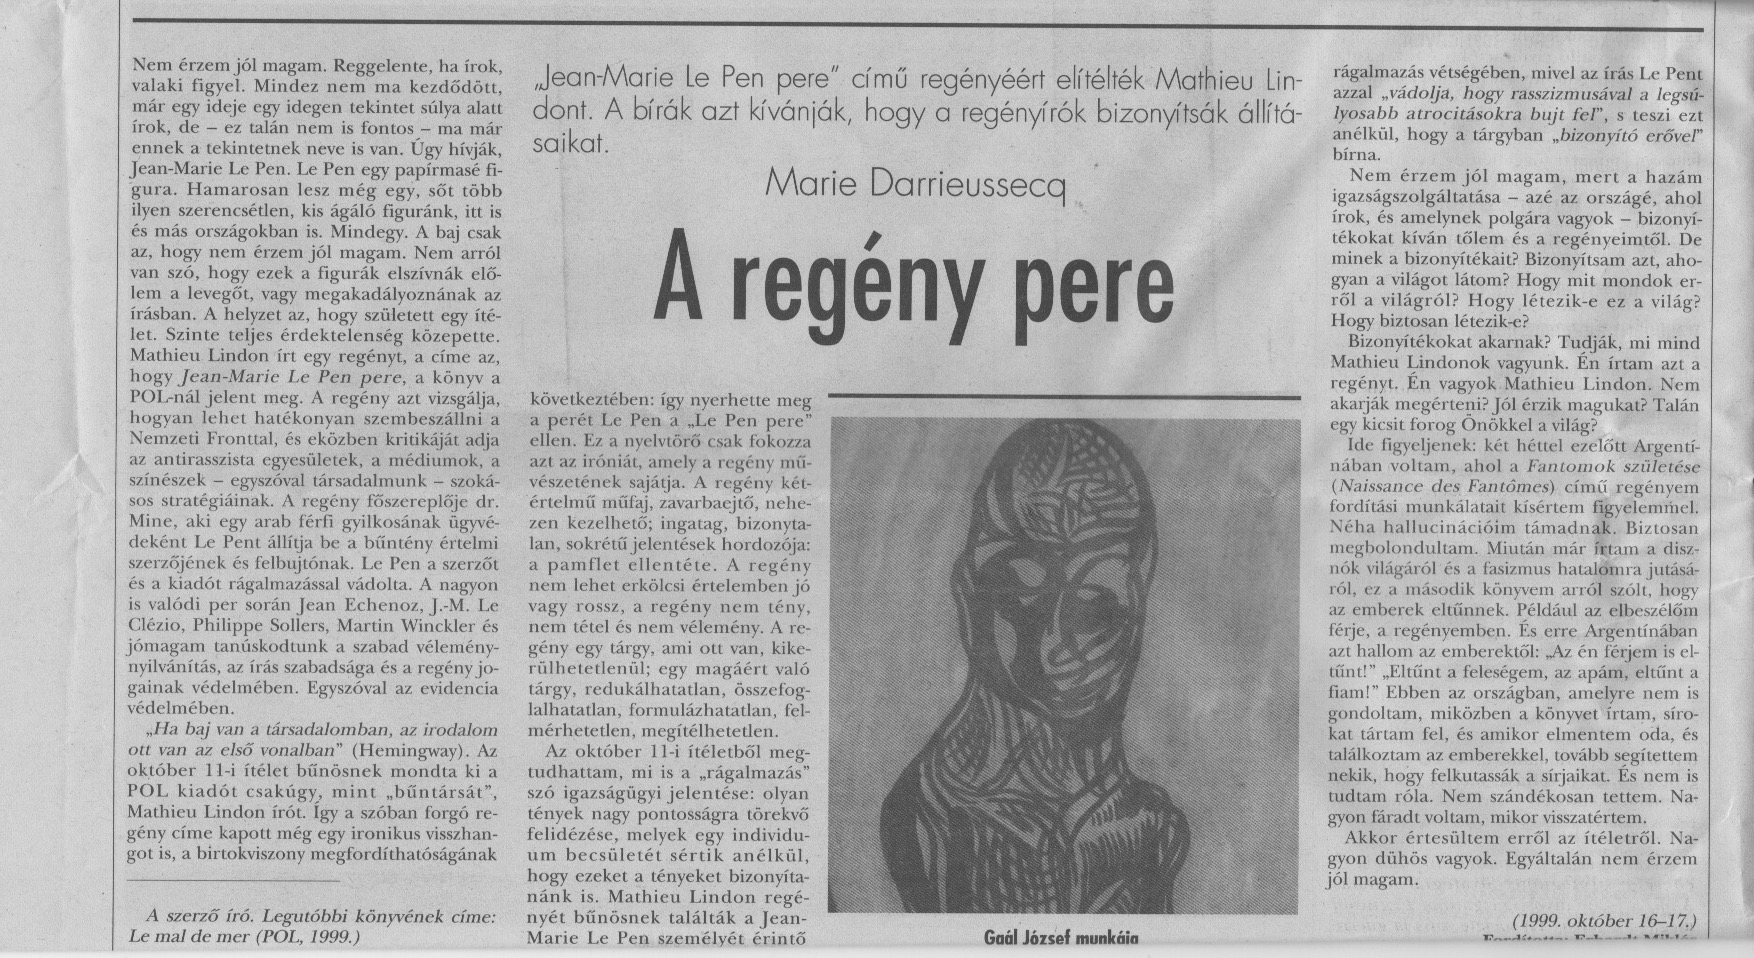 Contre le Pen, édition hongroise de Libération, 12 nov 1999